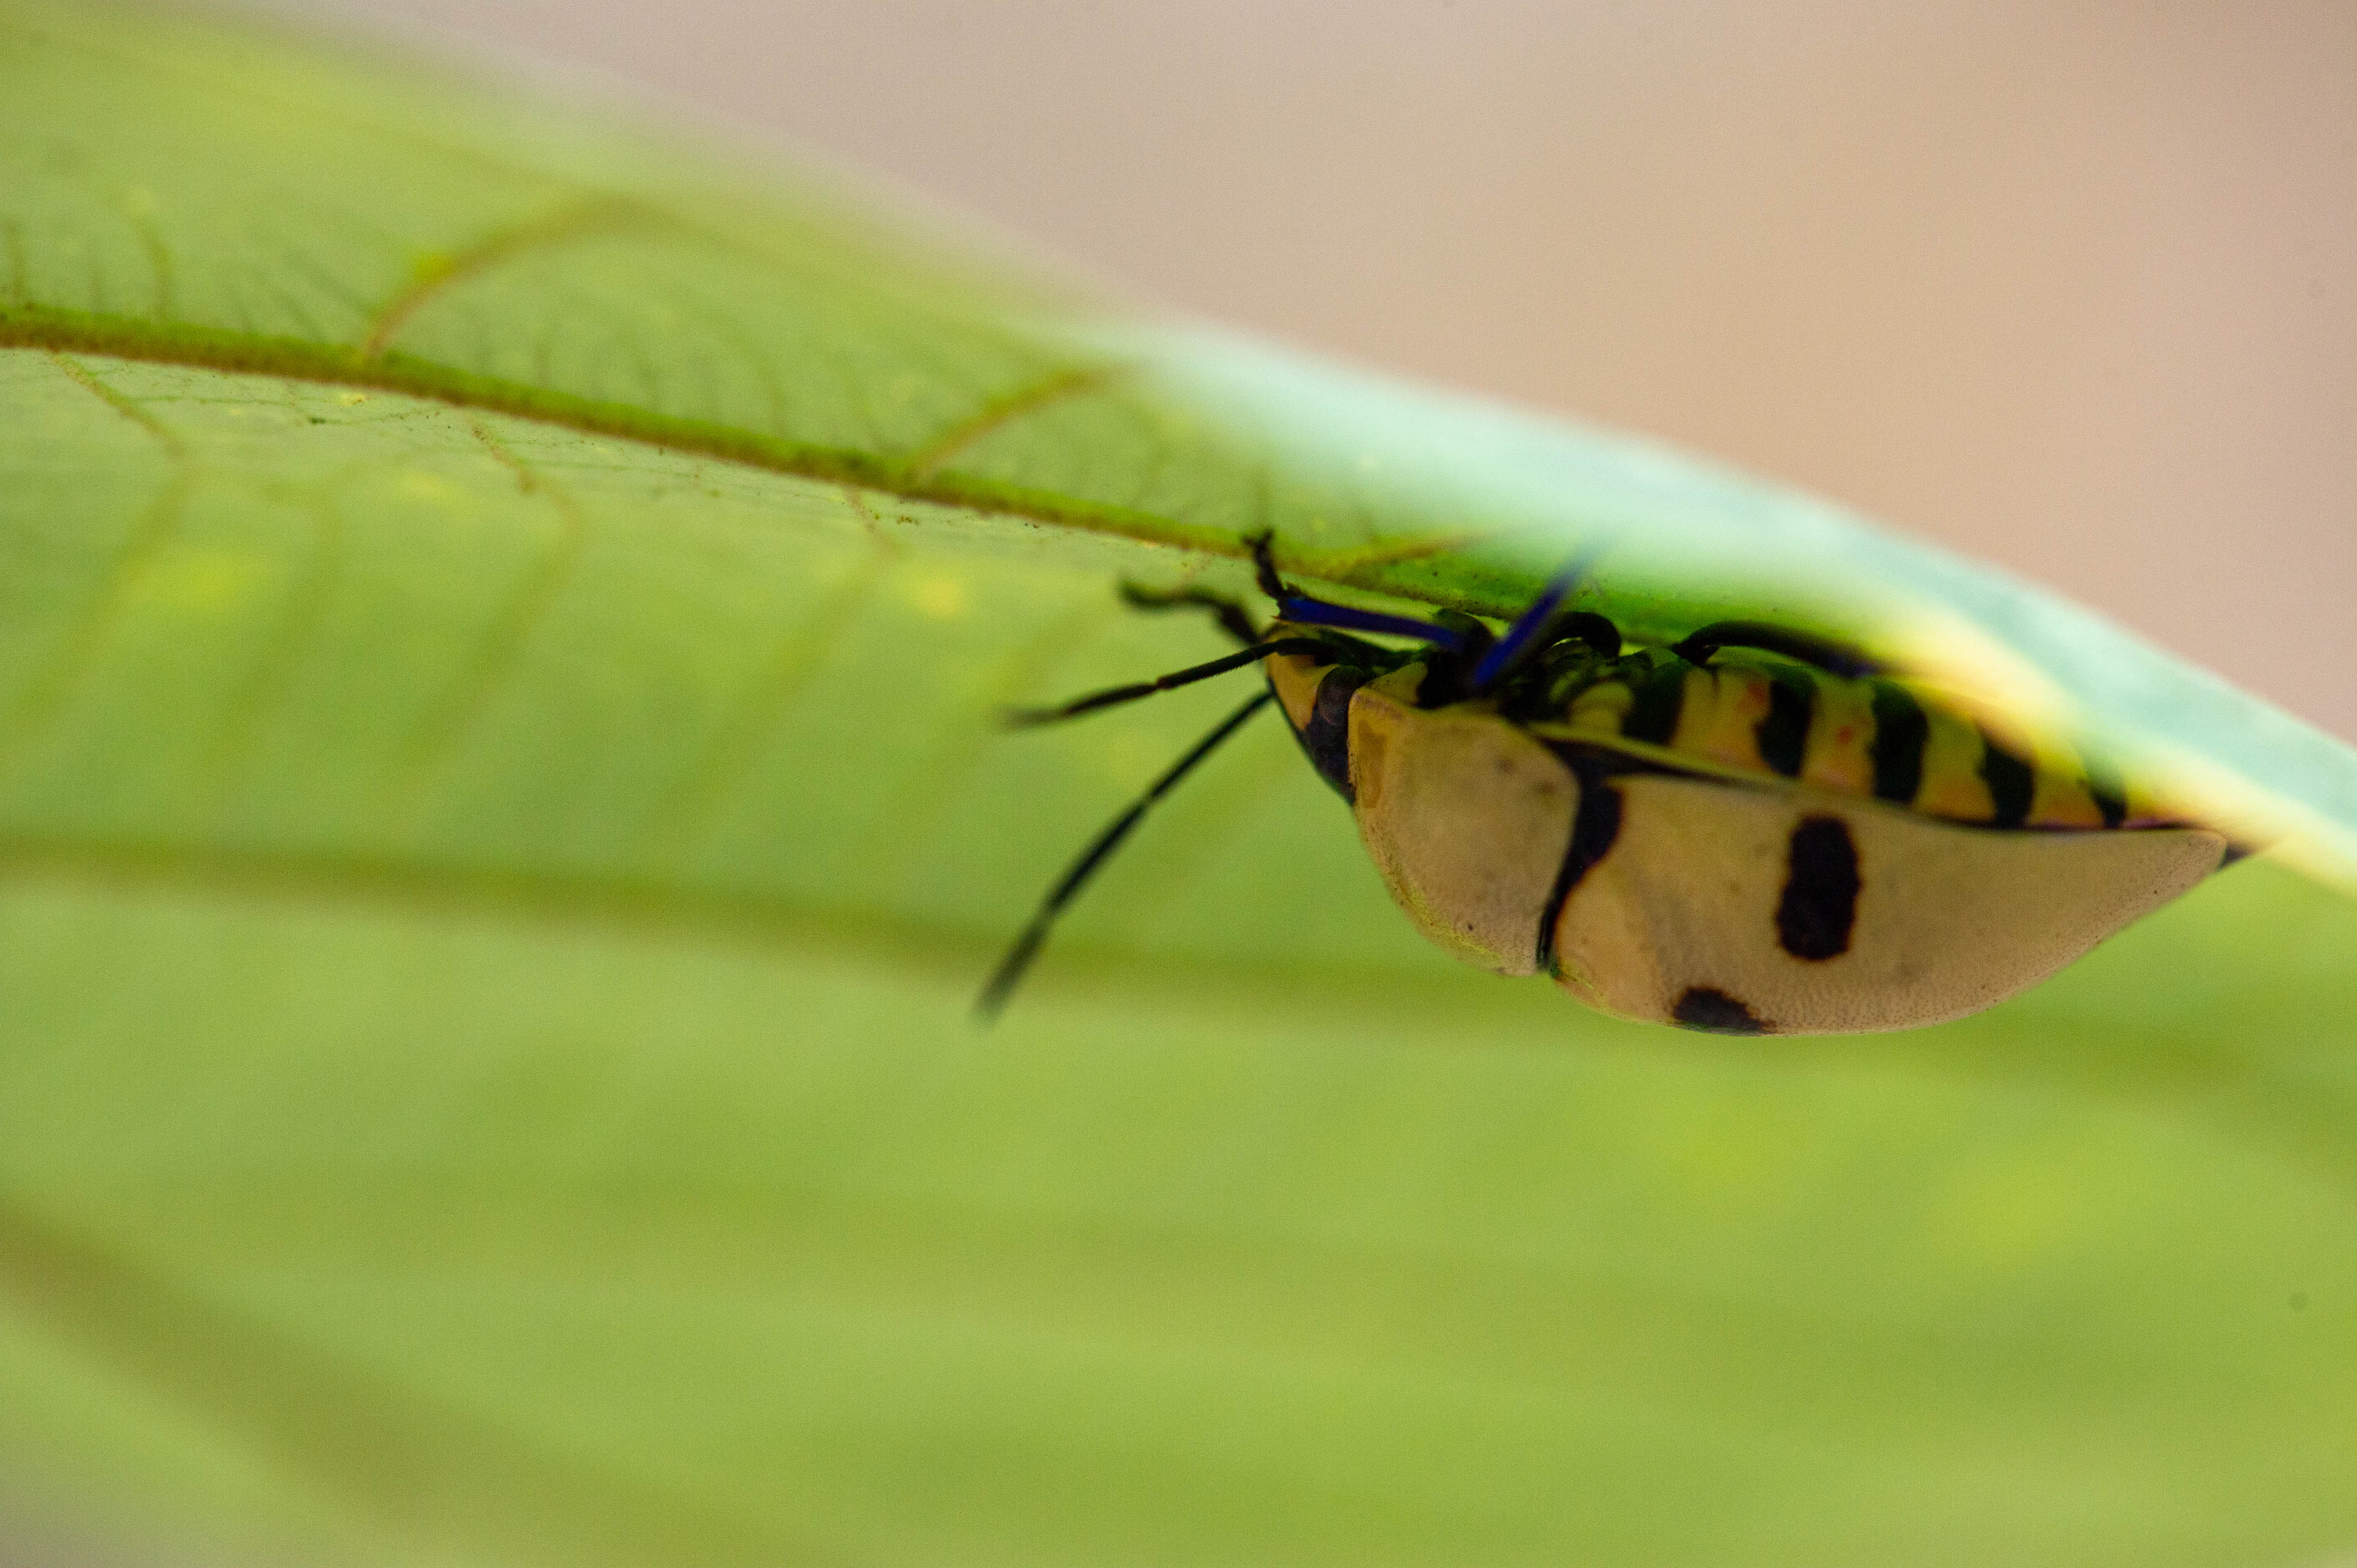 台湾 オオキンカメムシ 虫の写真と生態なら昆虫写真図鑑 ムシミル